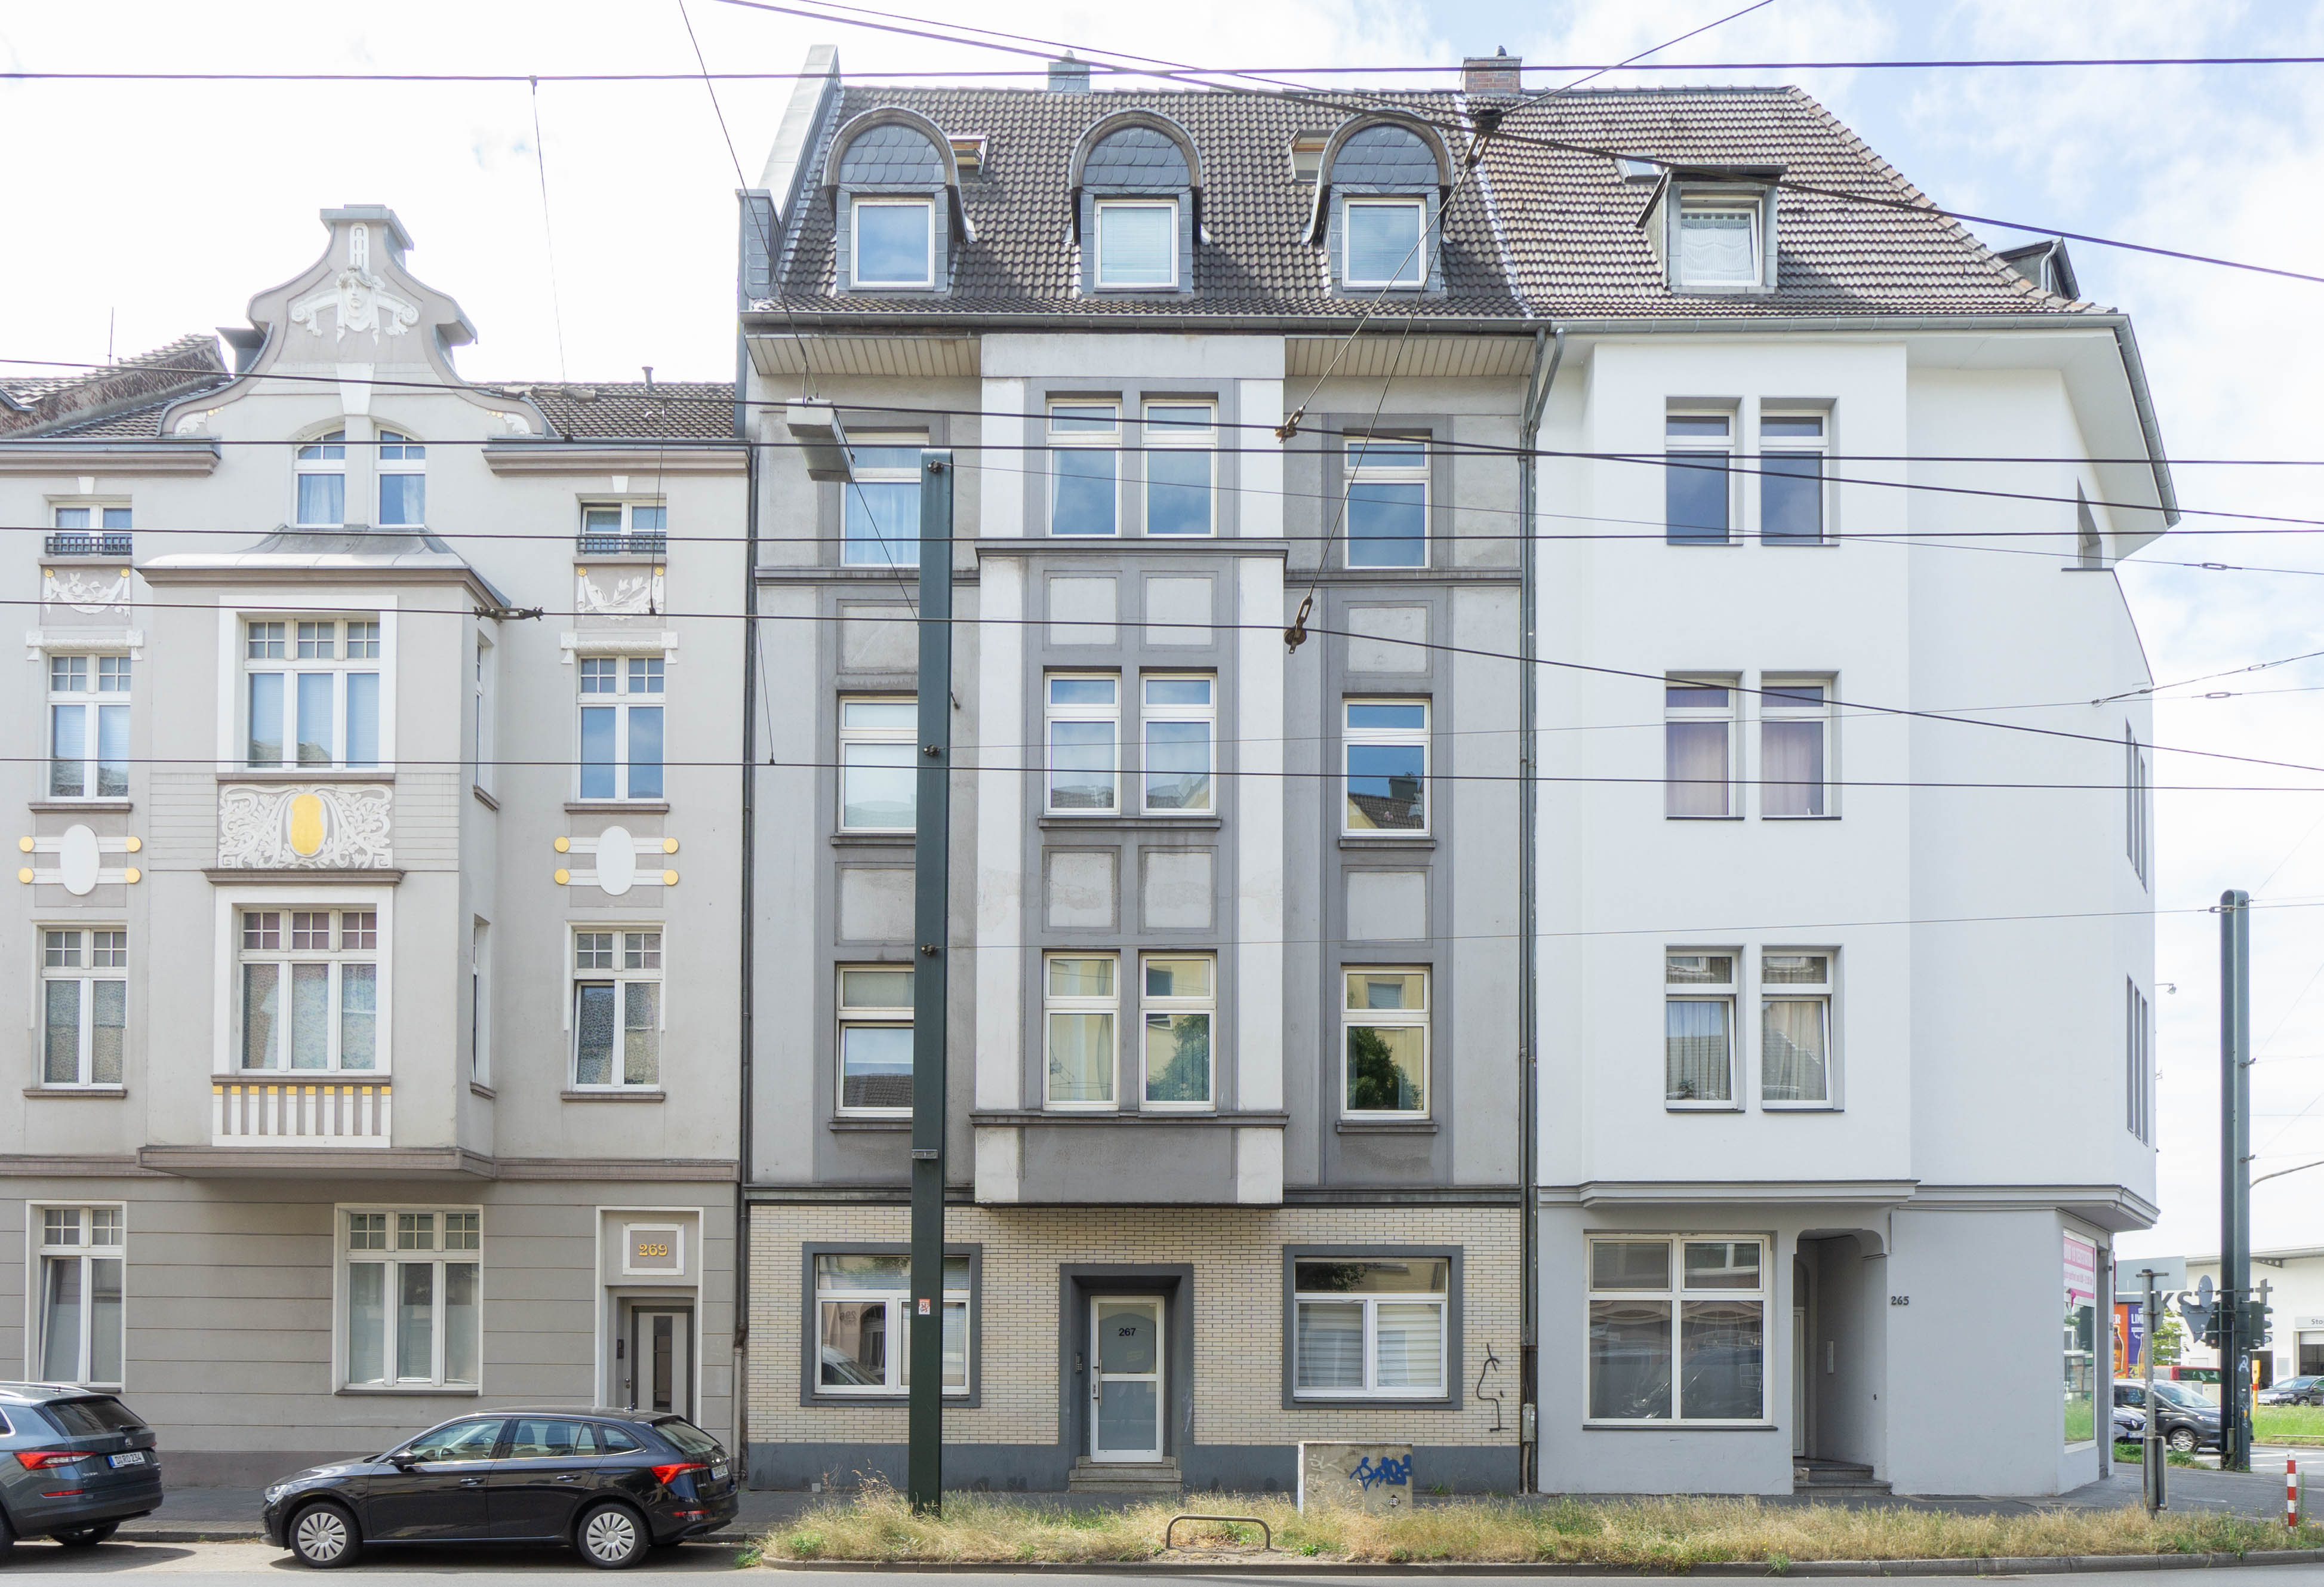 Solide vermietetes Wohnhaus mit 10 Einheiten in Lierenfeld - Top Rendite in Düsseldorf